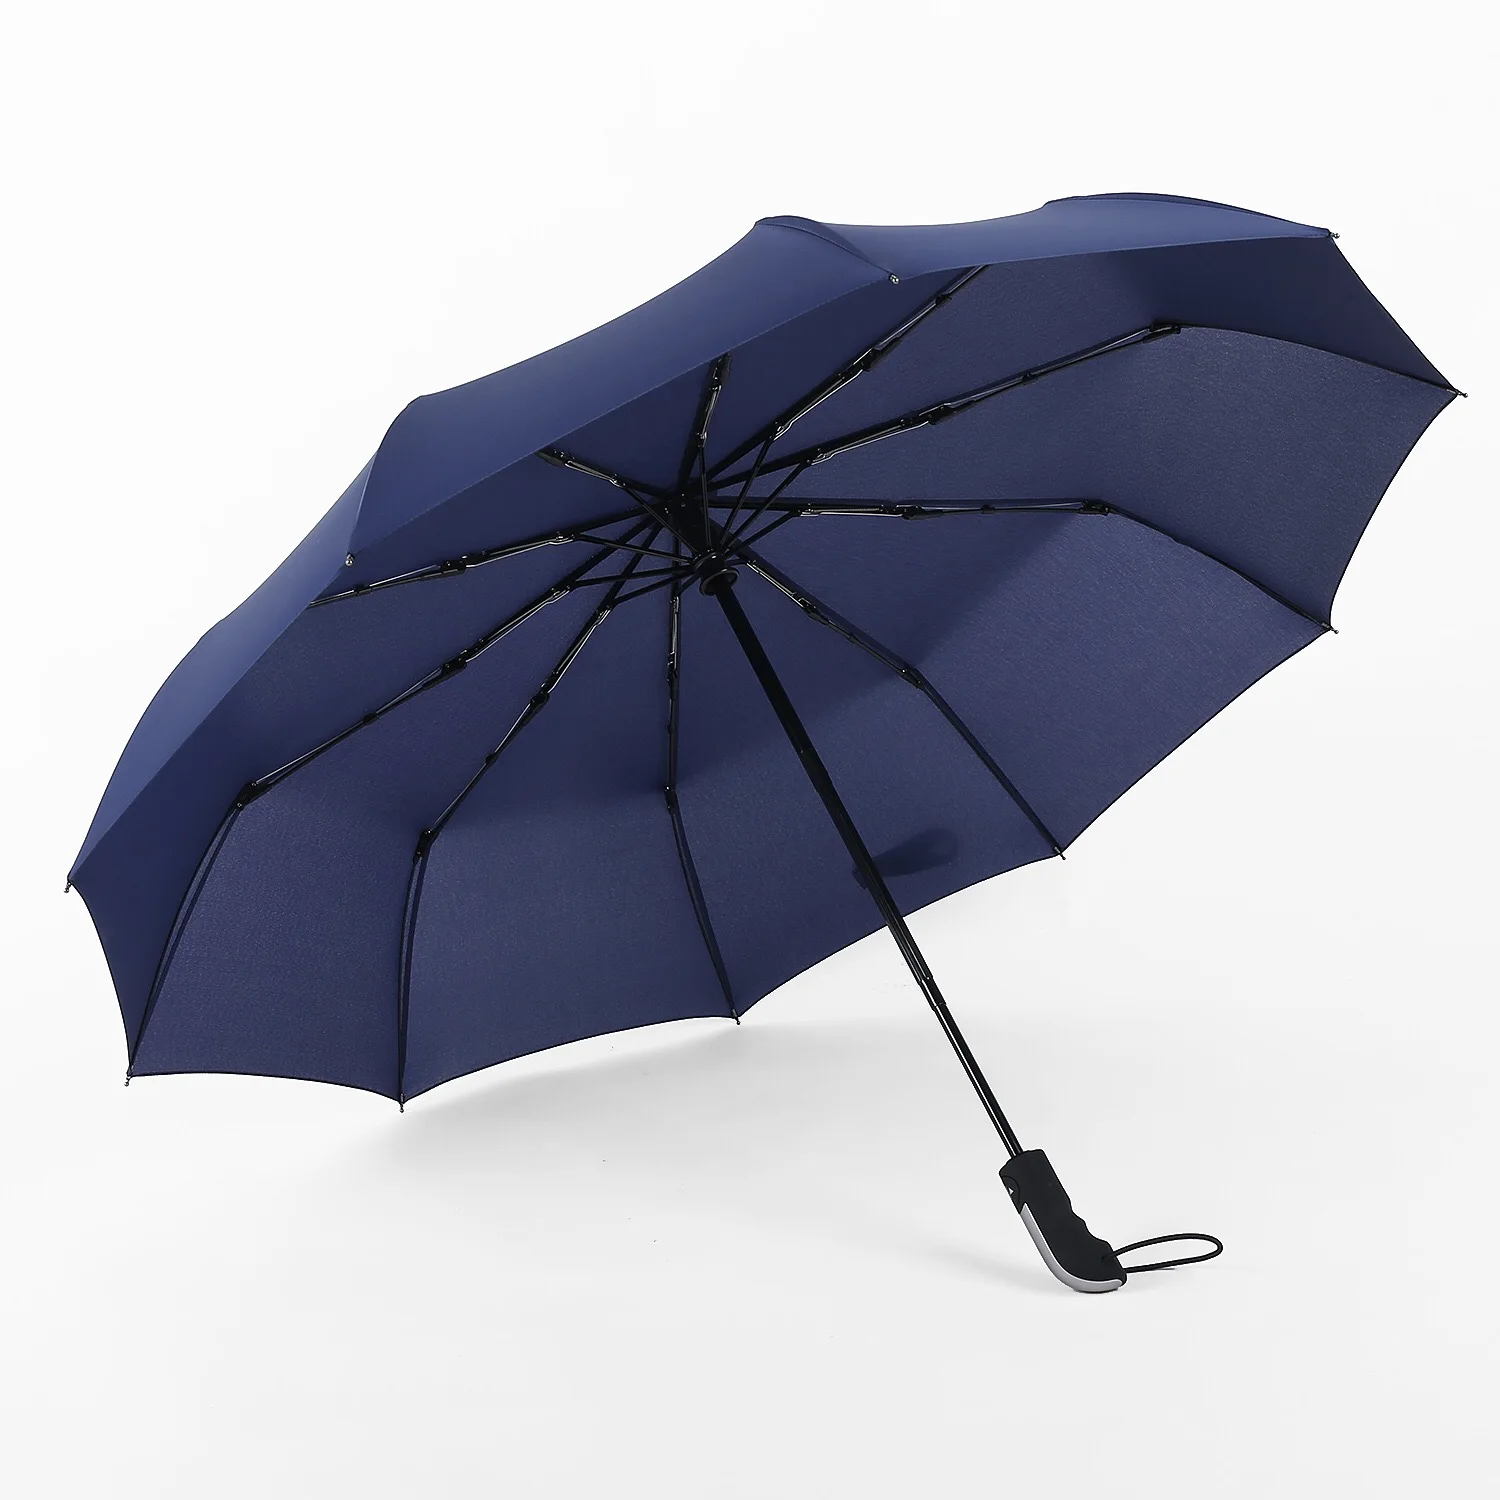 Зонтик женский автомат прочный. Umbr-8003-Green зонт женский.. Складной мини-зонт темно-синий | Ardeco Design. Зонт складной Monsoon оранжевый 14518. Автоматический складной зонт Mercedes-Benz Pocket Umbrella, Black SM, fkhl170238mb.